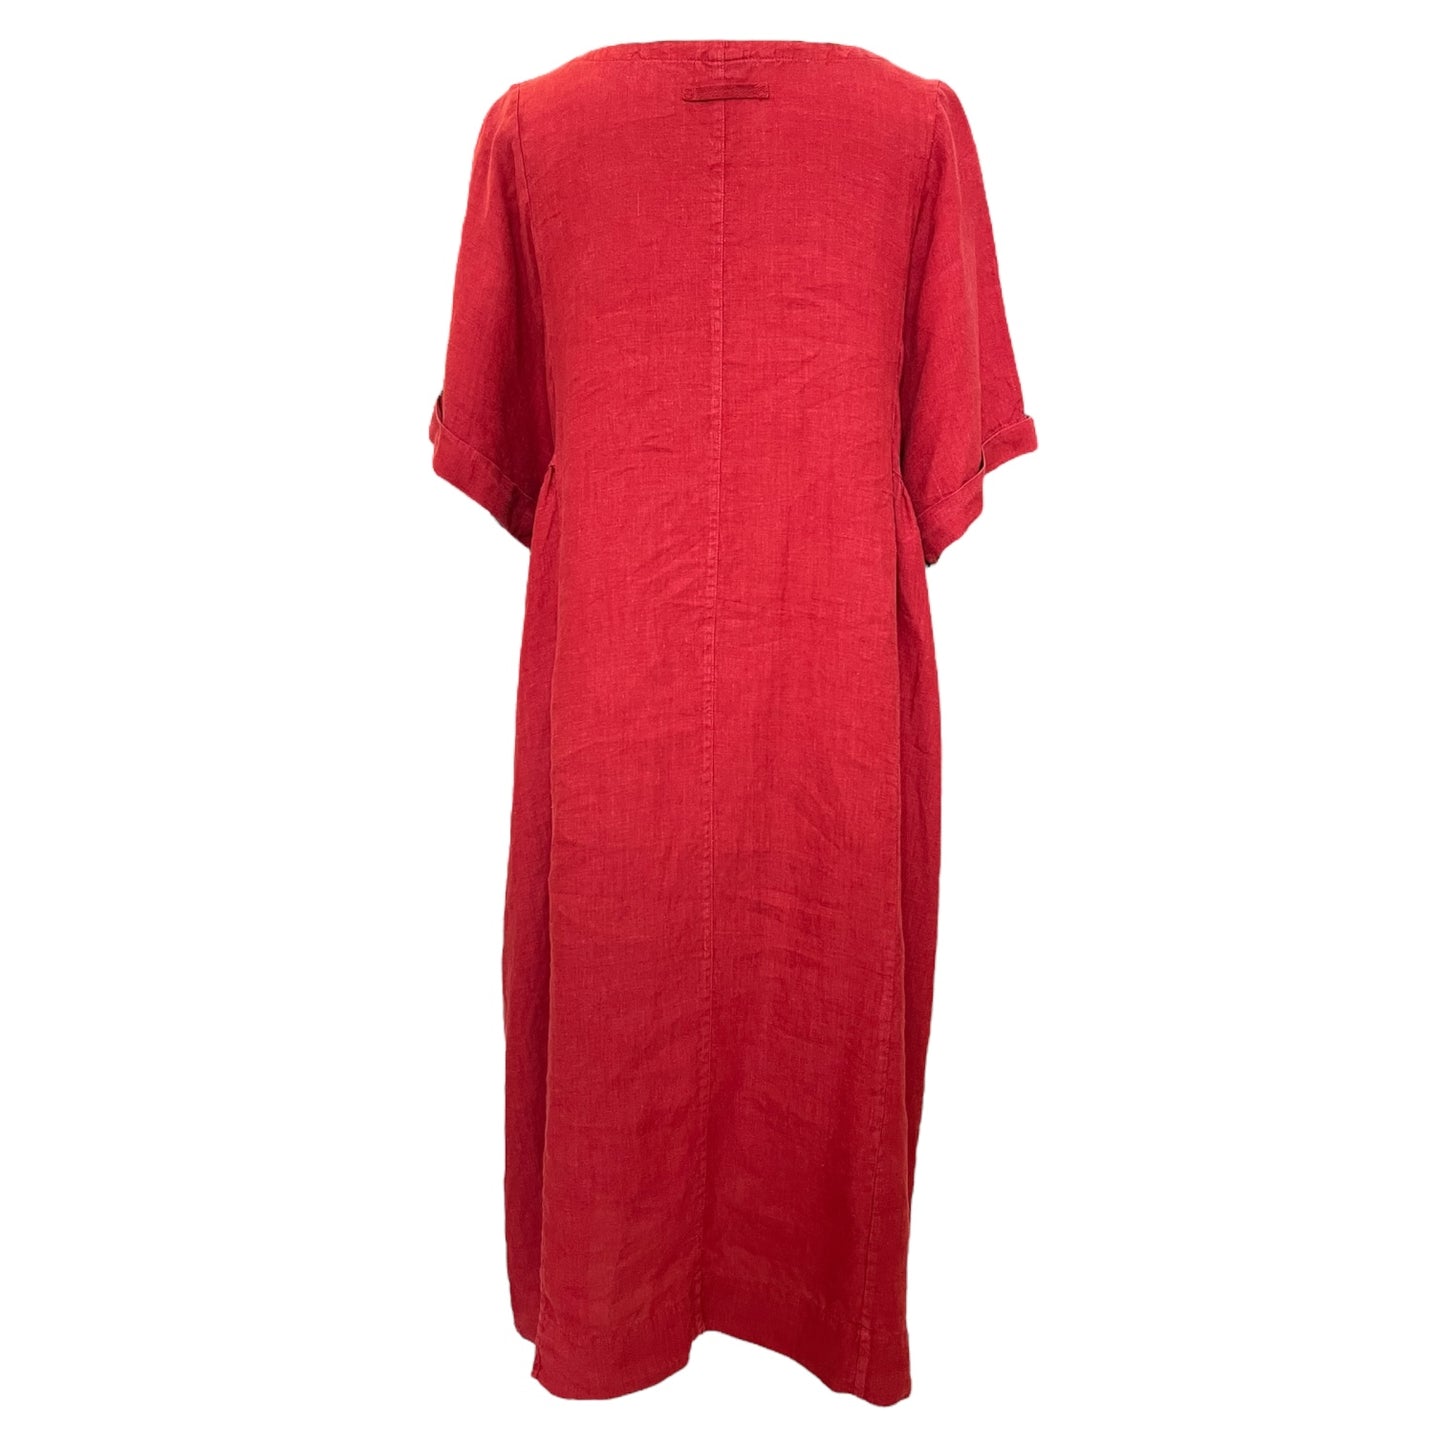 Toast Rust Red Linen Dress - 12/14